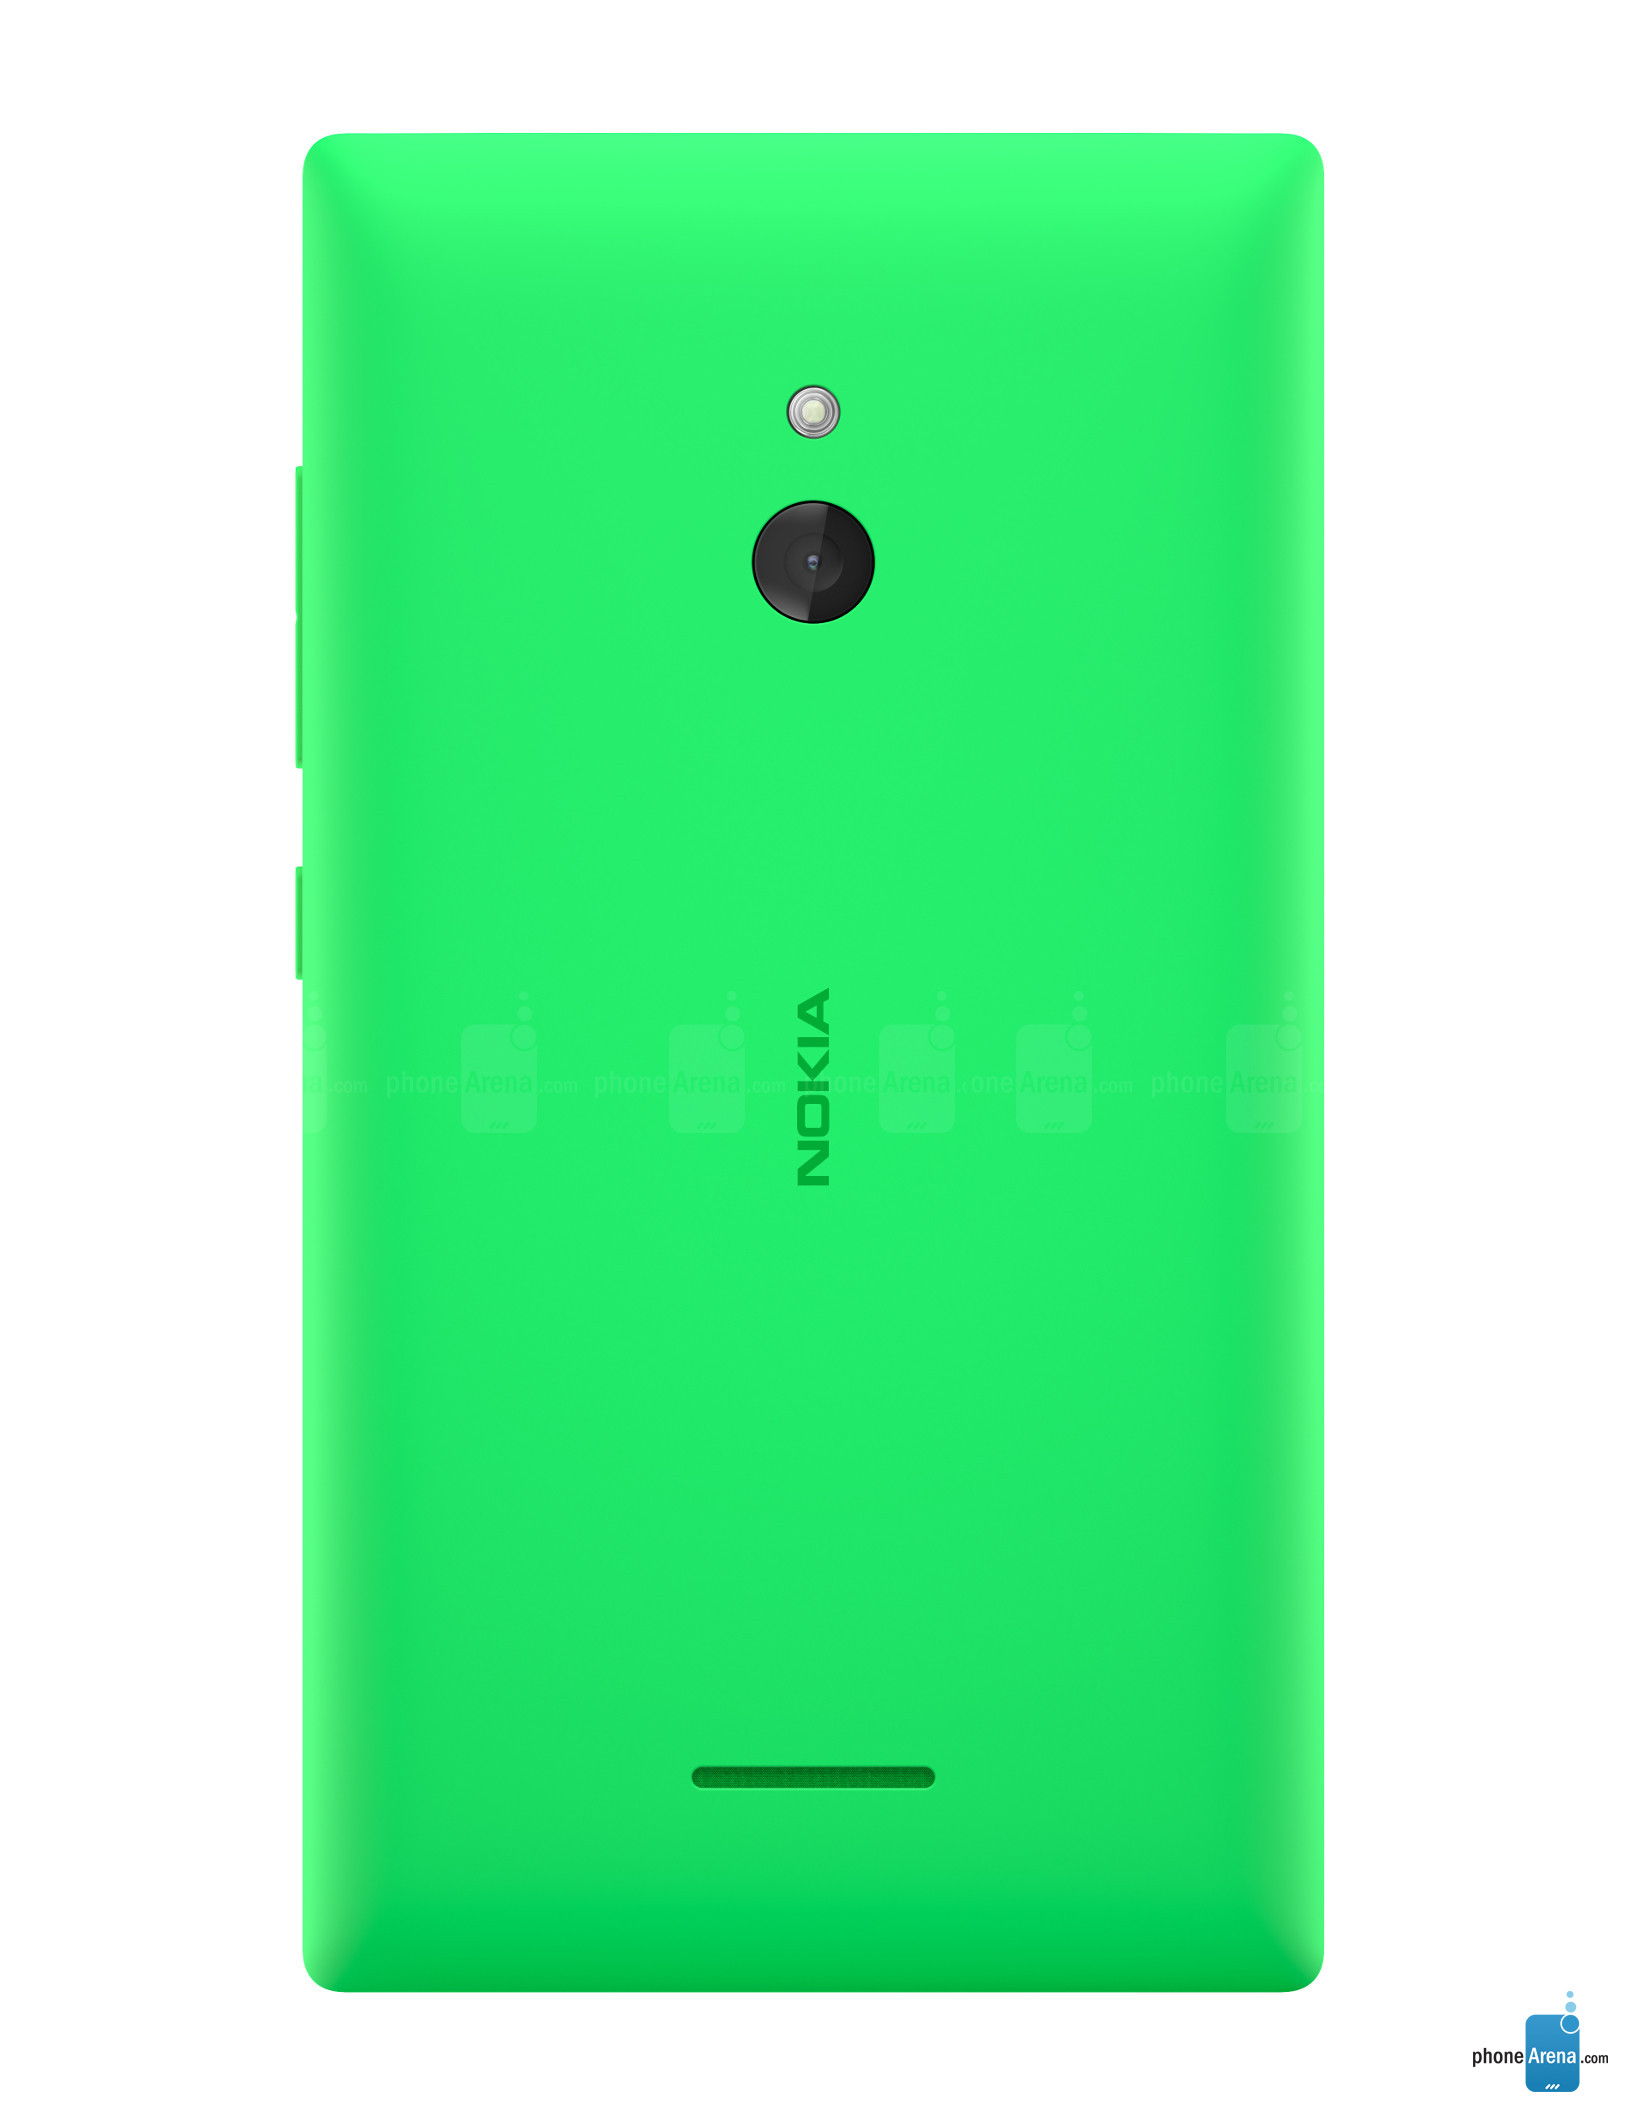 Nokia XL chính thức bán ra với giá hơn 3 triệu đồng